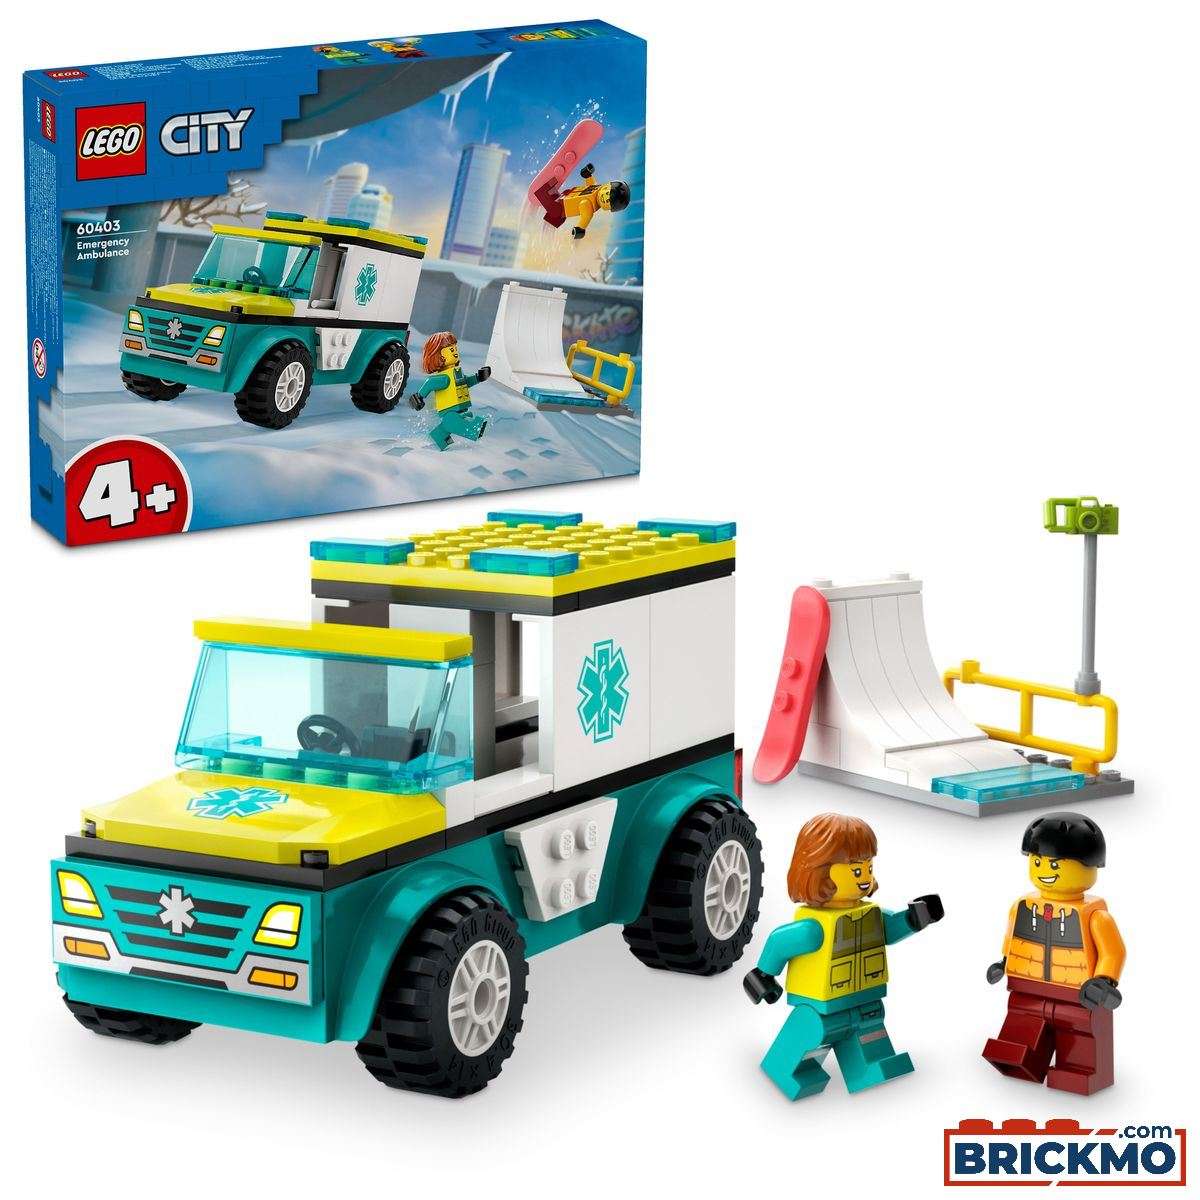 LEGO City 60403 Emergency Ambulance and Snowboarder 60403